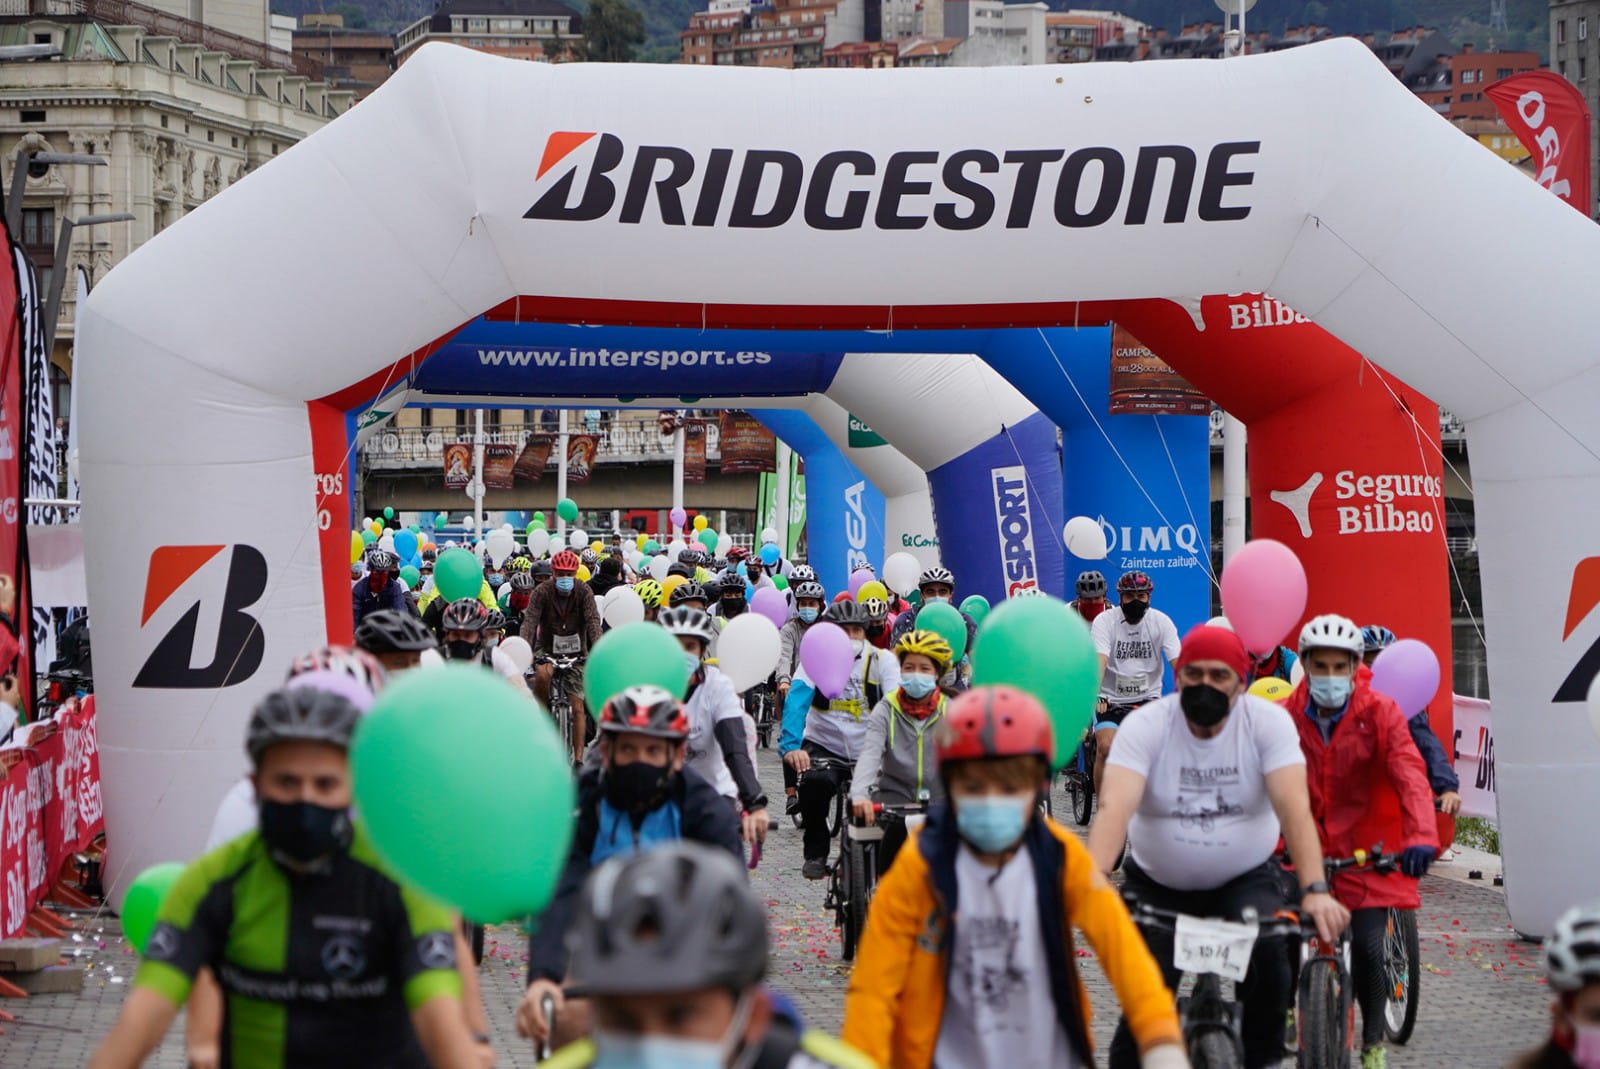 La Bicicletada de Bilbao se celebró con éxito a pesar de la climatología